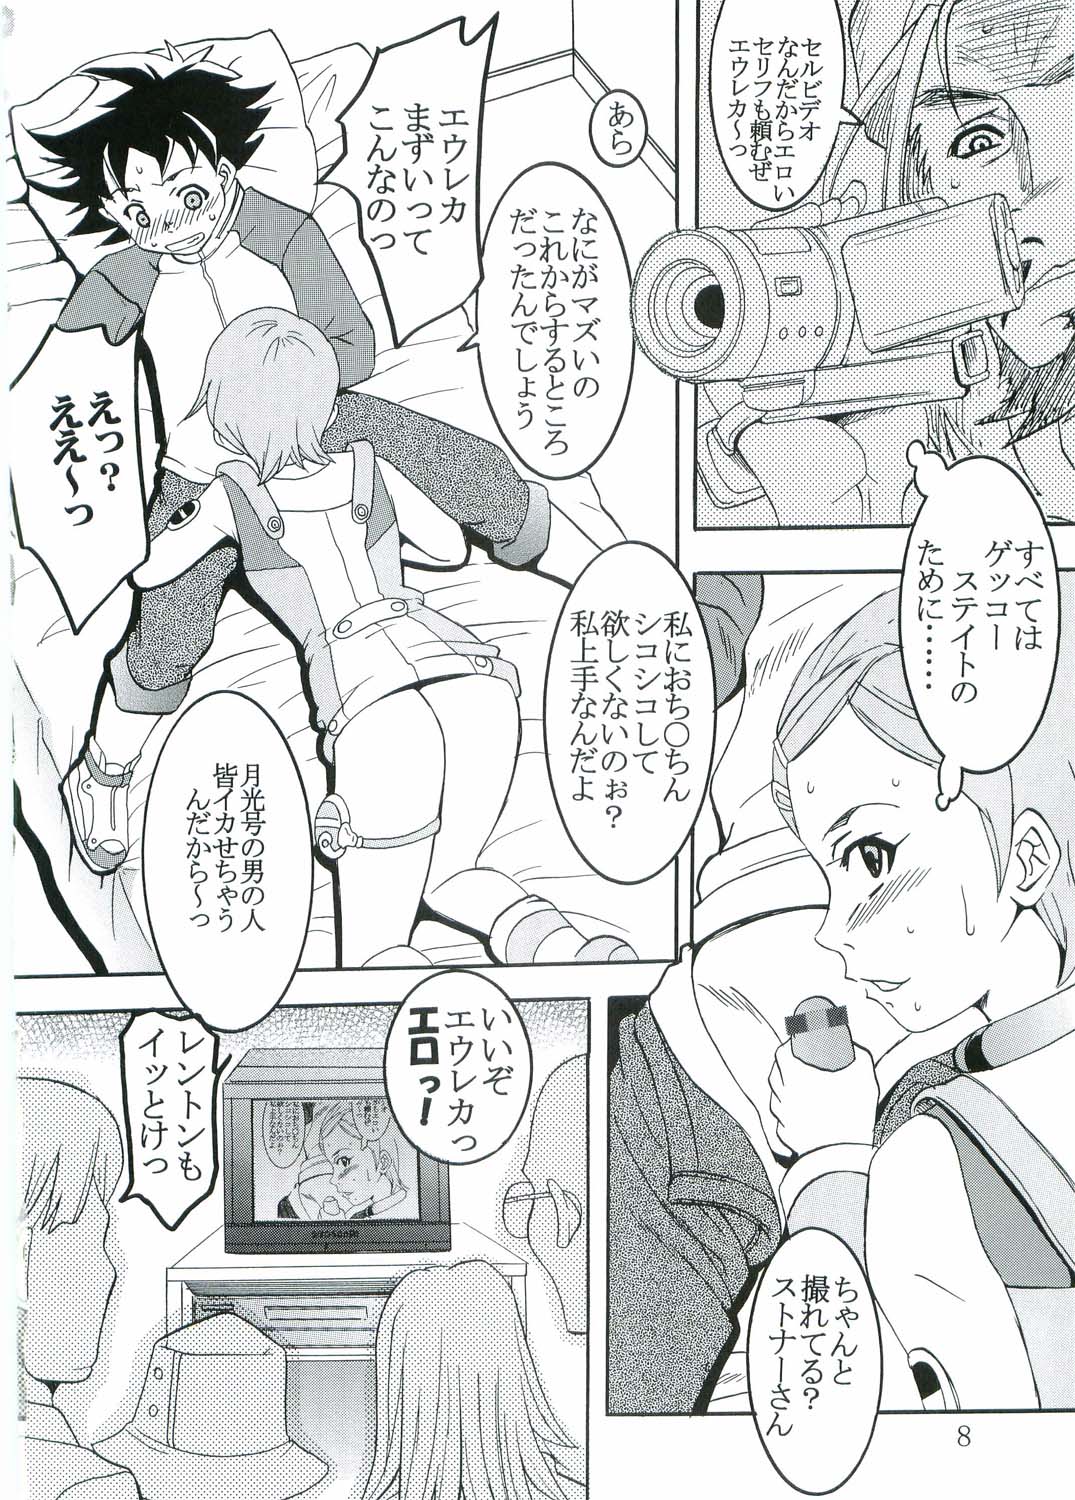 [St. Rio (Kitty, Kouenji Rei)] Ura ray-out (Eureka seveN) page 9 full